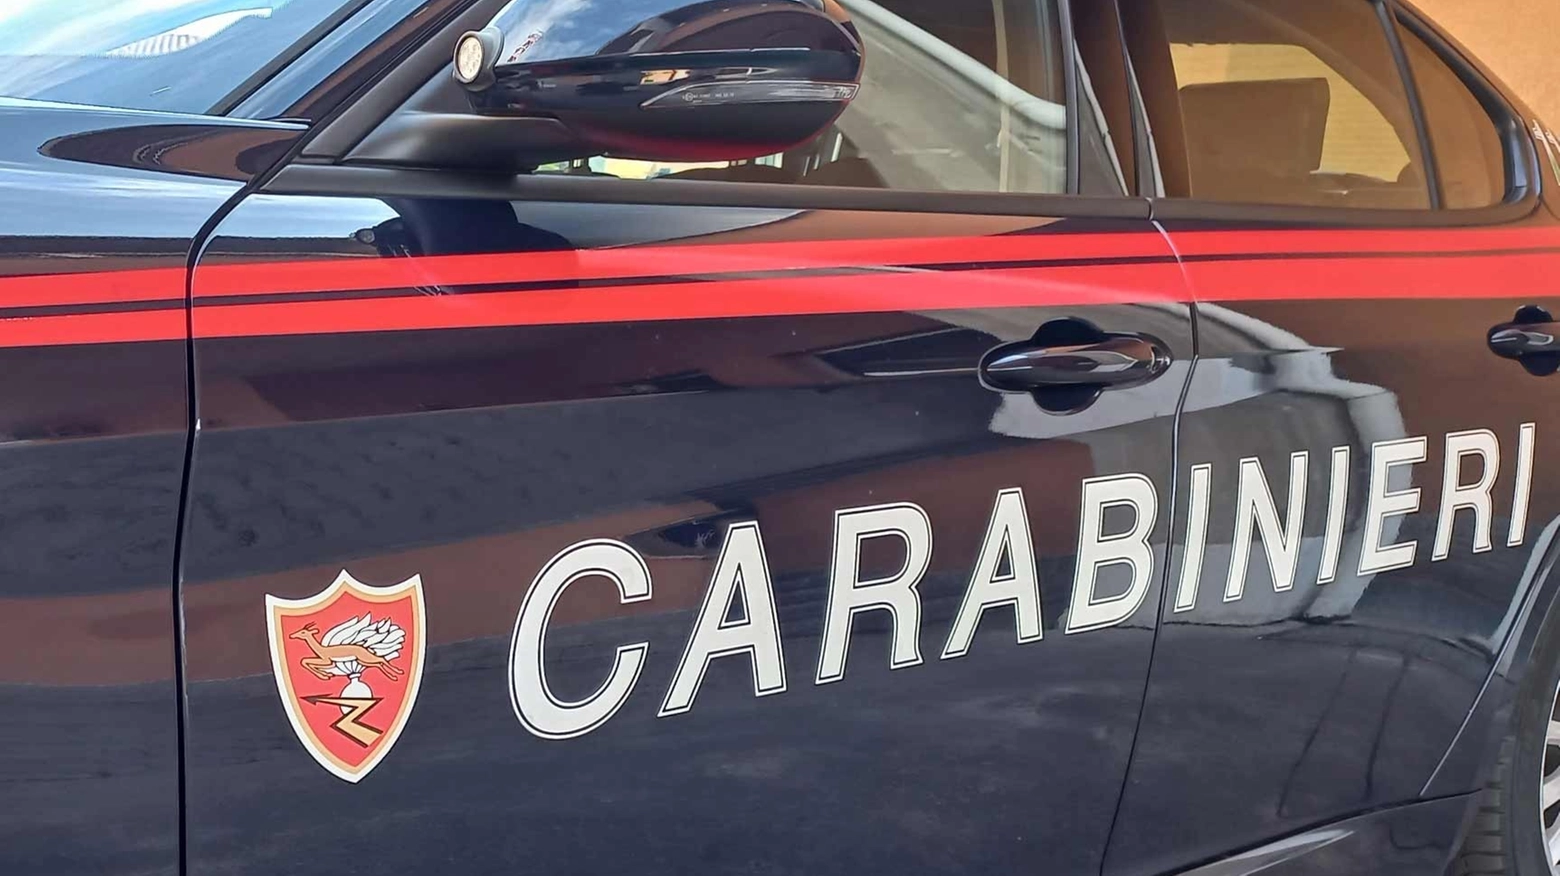 La denuncia è stata presentata ai Carabinieri di Legnano